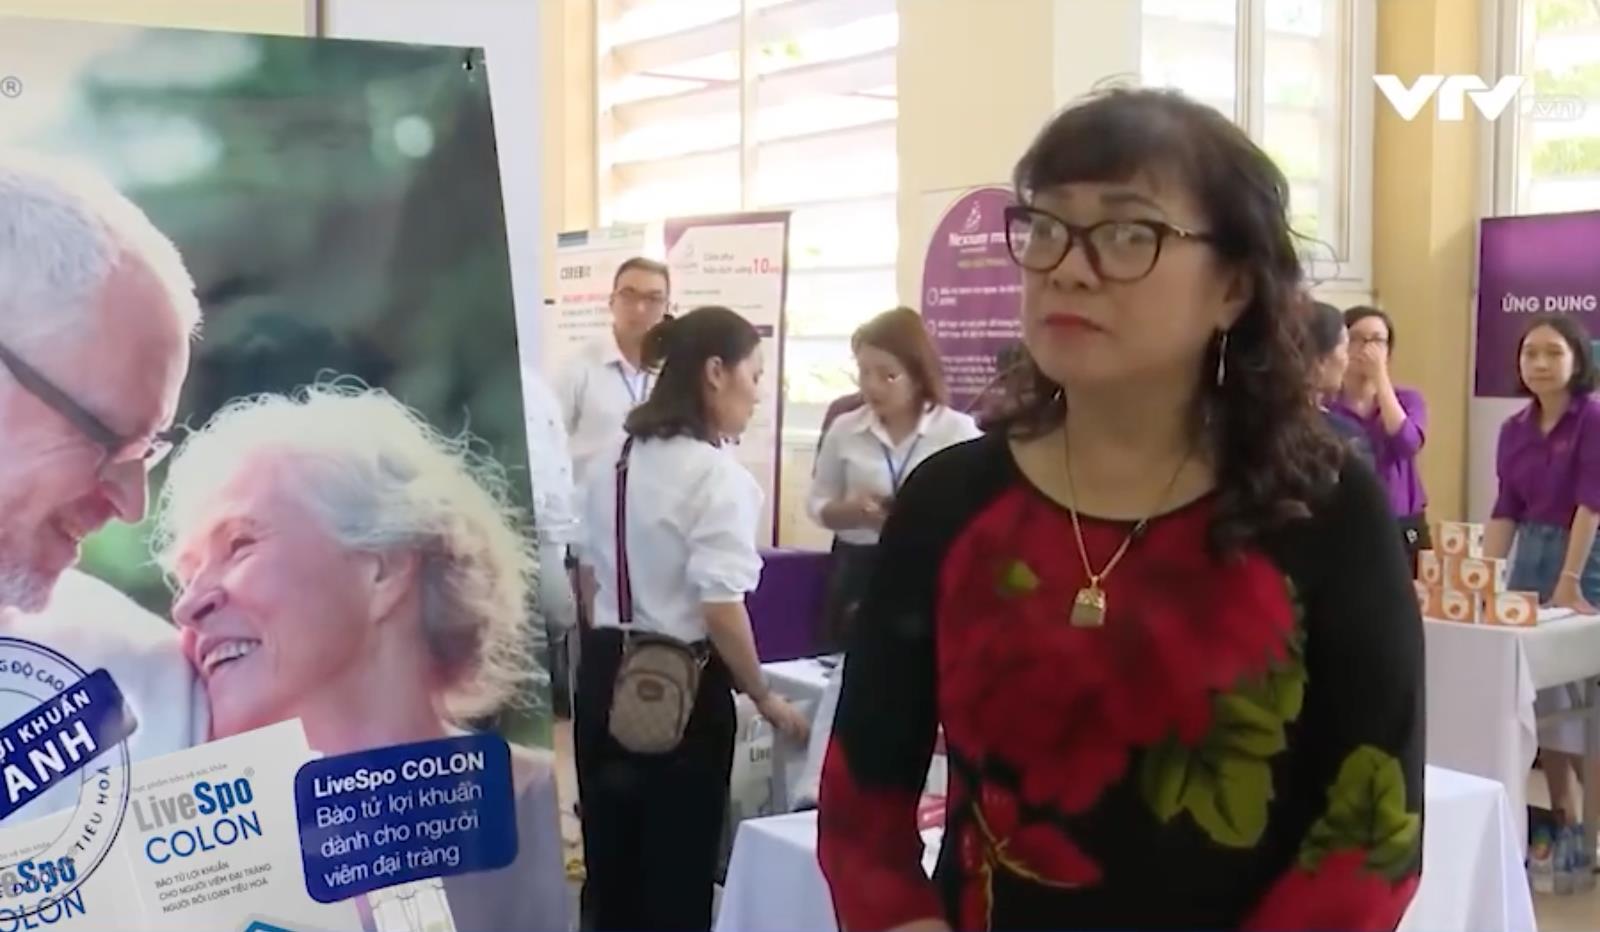 LiveSpo đưa bào tử lợi khuẩn Việt vươn tầm quốc tế